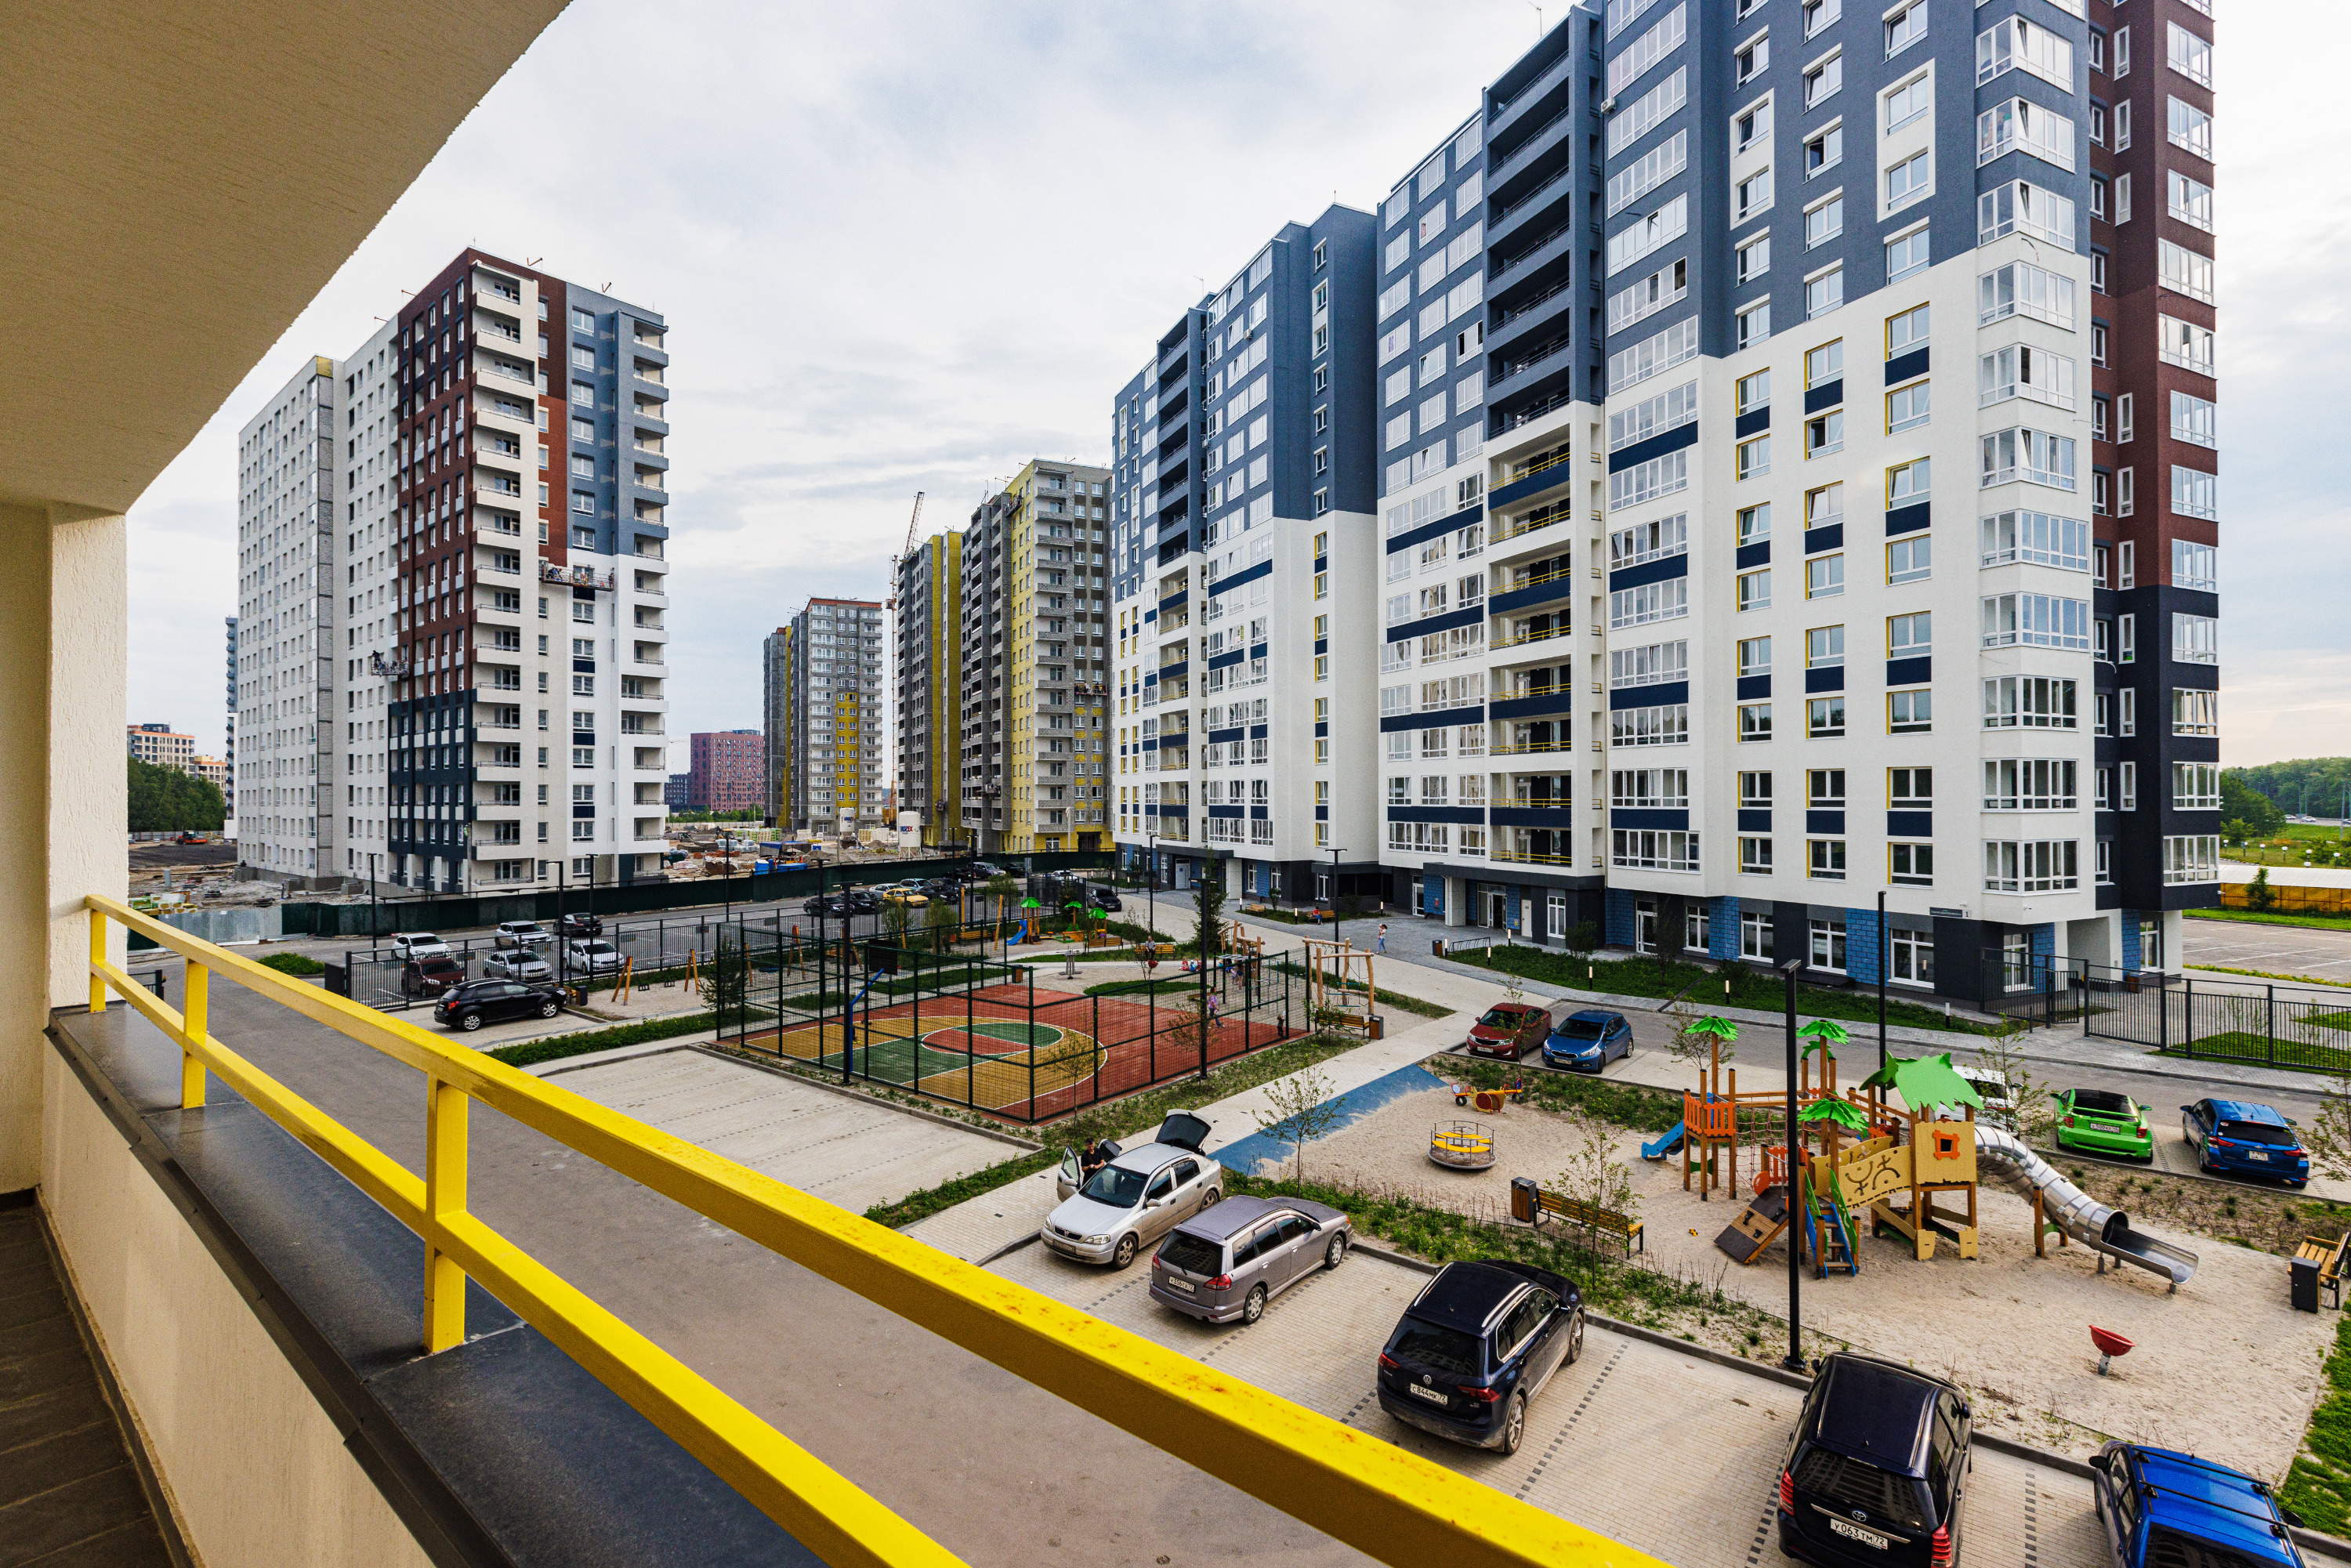 Цена двухкомнатных квартир в этом проекте начинается от 4,95 миллиона рублей